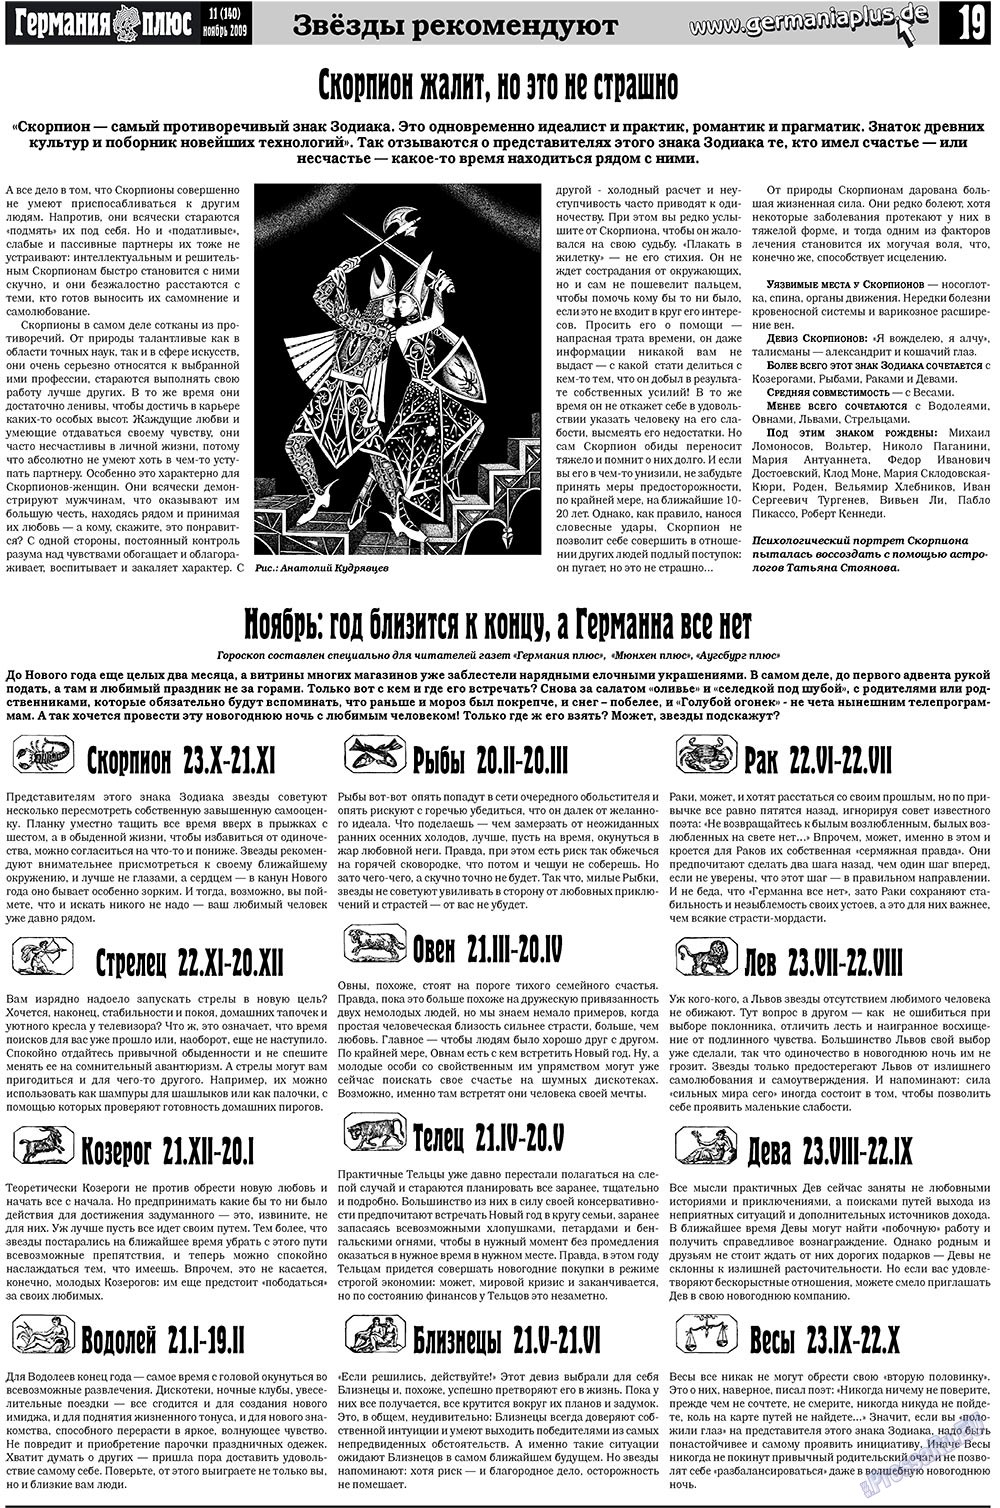 Германия плюс, газета. 2009 №11 стр.19